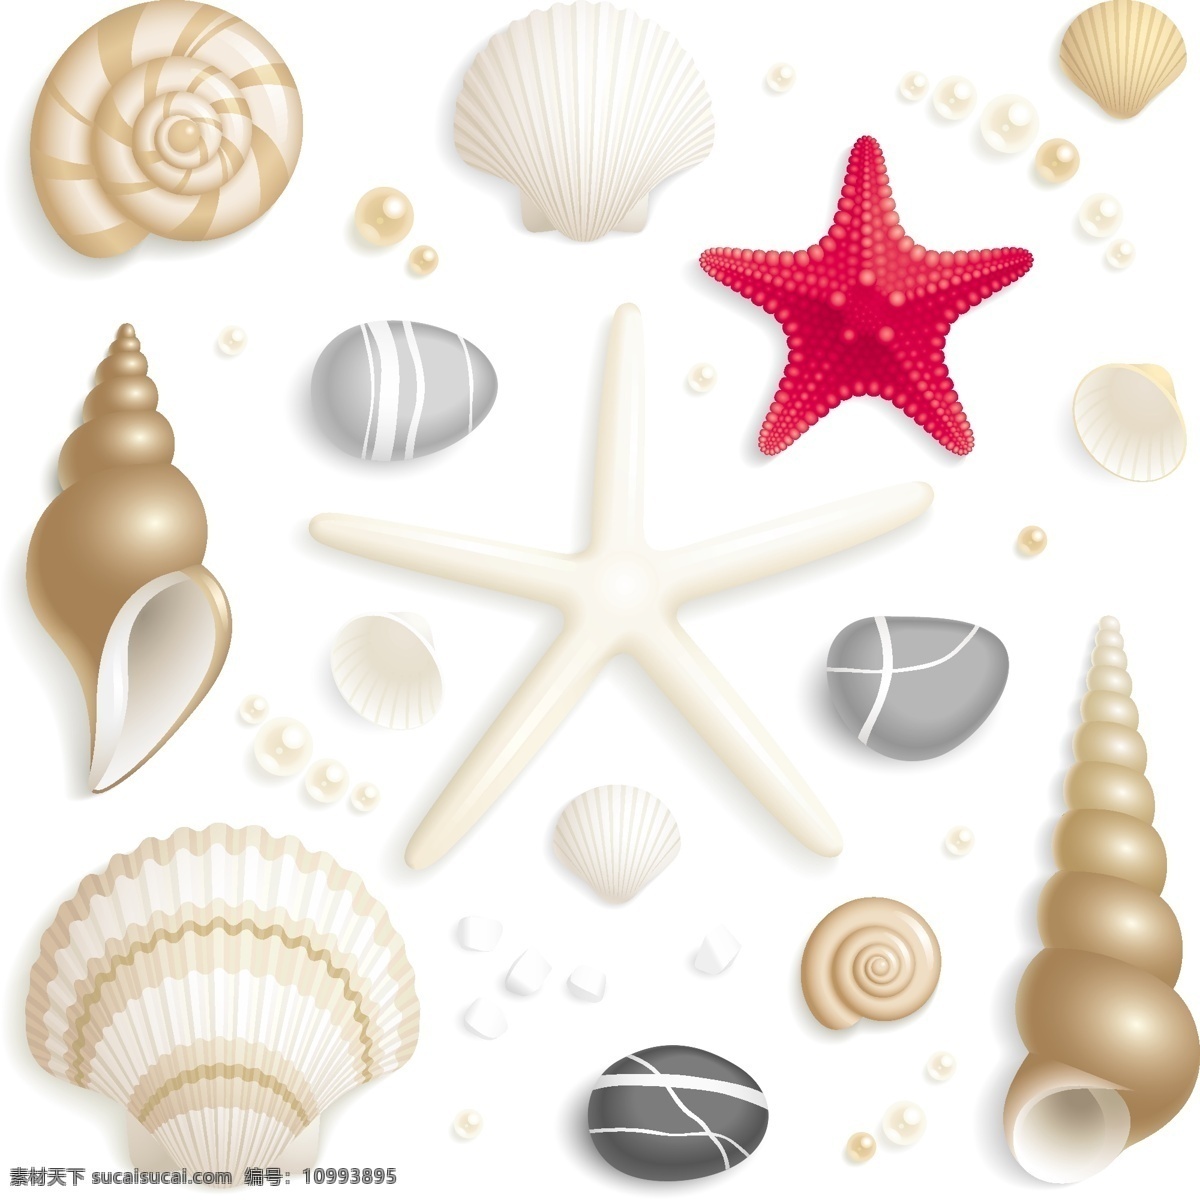 贝壳 可爱 矢量 图标 集 web 插画 创意 海螺 海马 免费 图形 病 媒 生物 时尚 独特的 原始的 高质量 质量 新鲜的 设计新的 壳 壳图标 贝壳图标 psd源文件